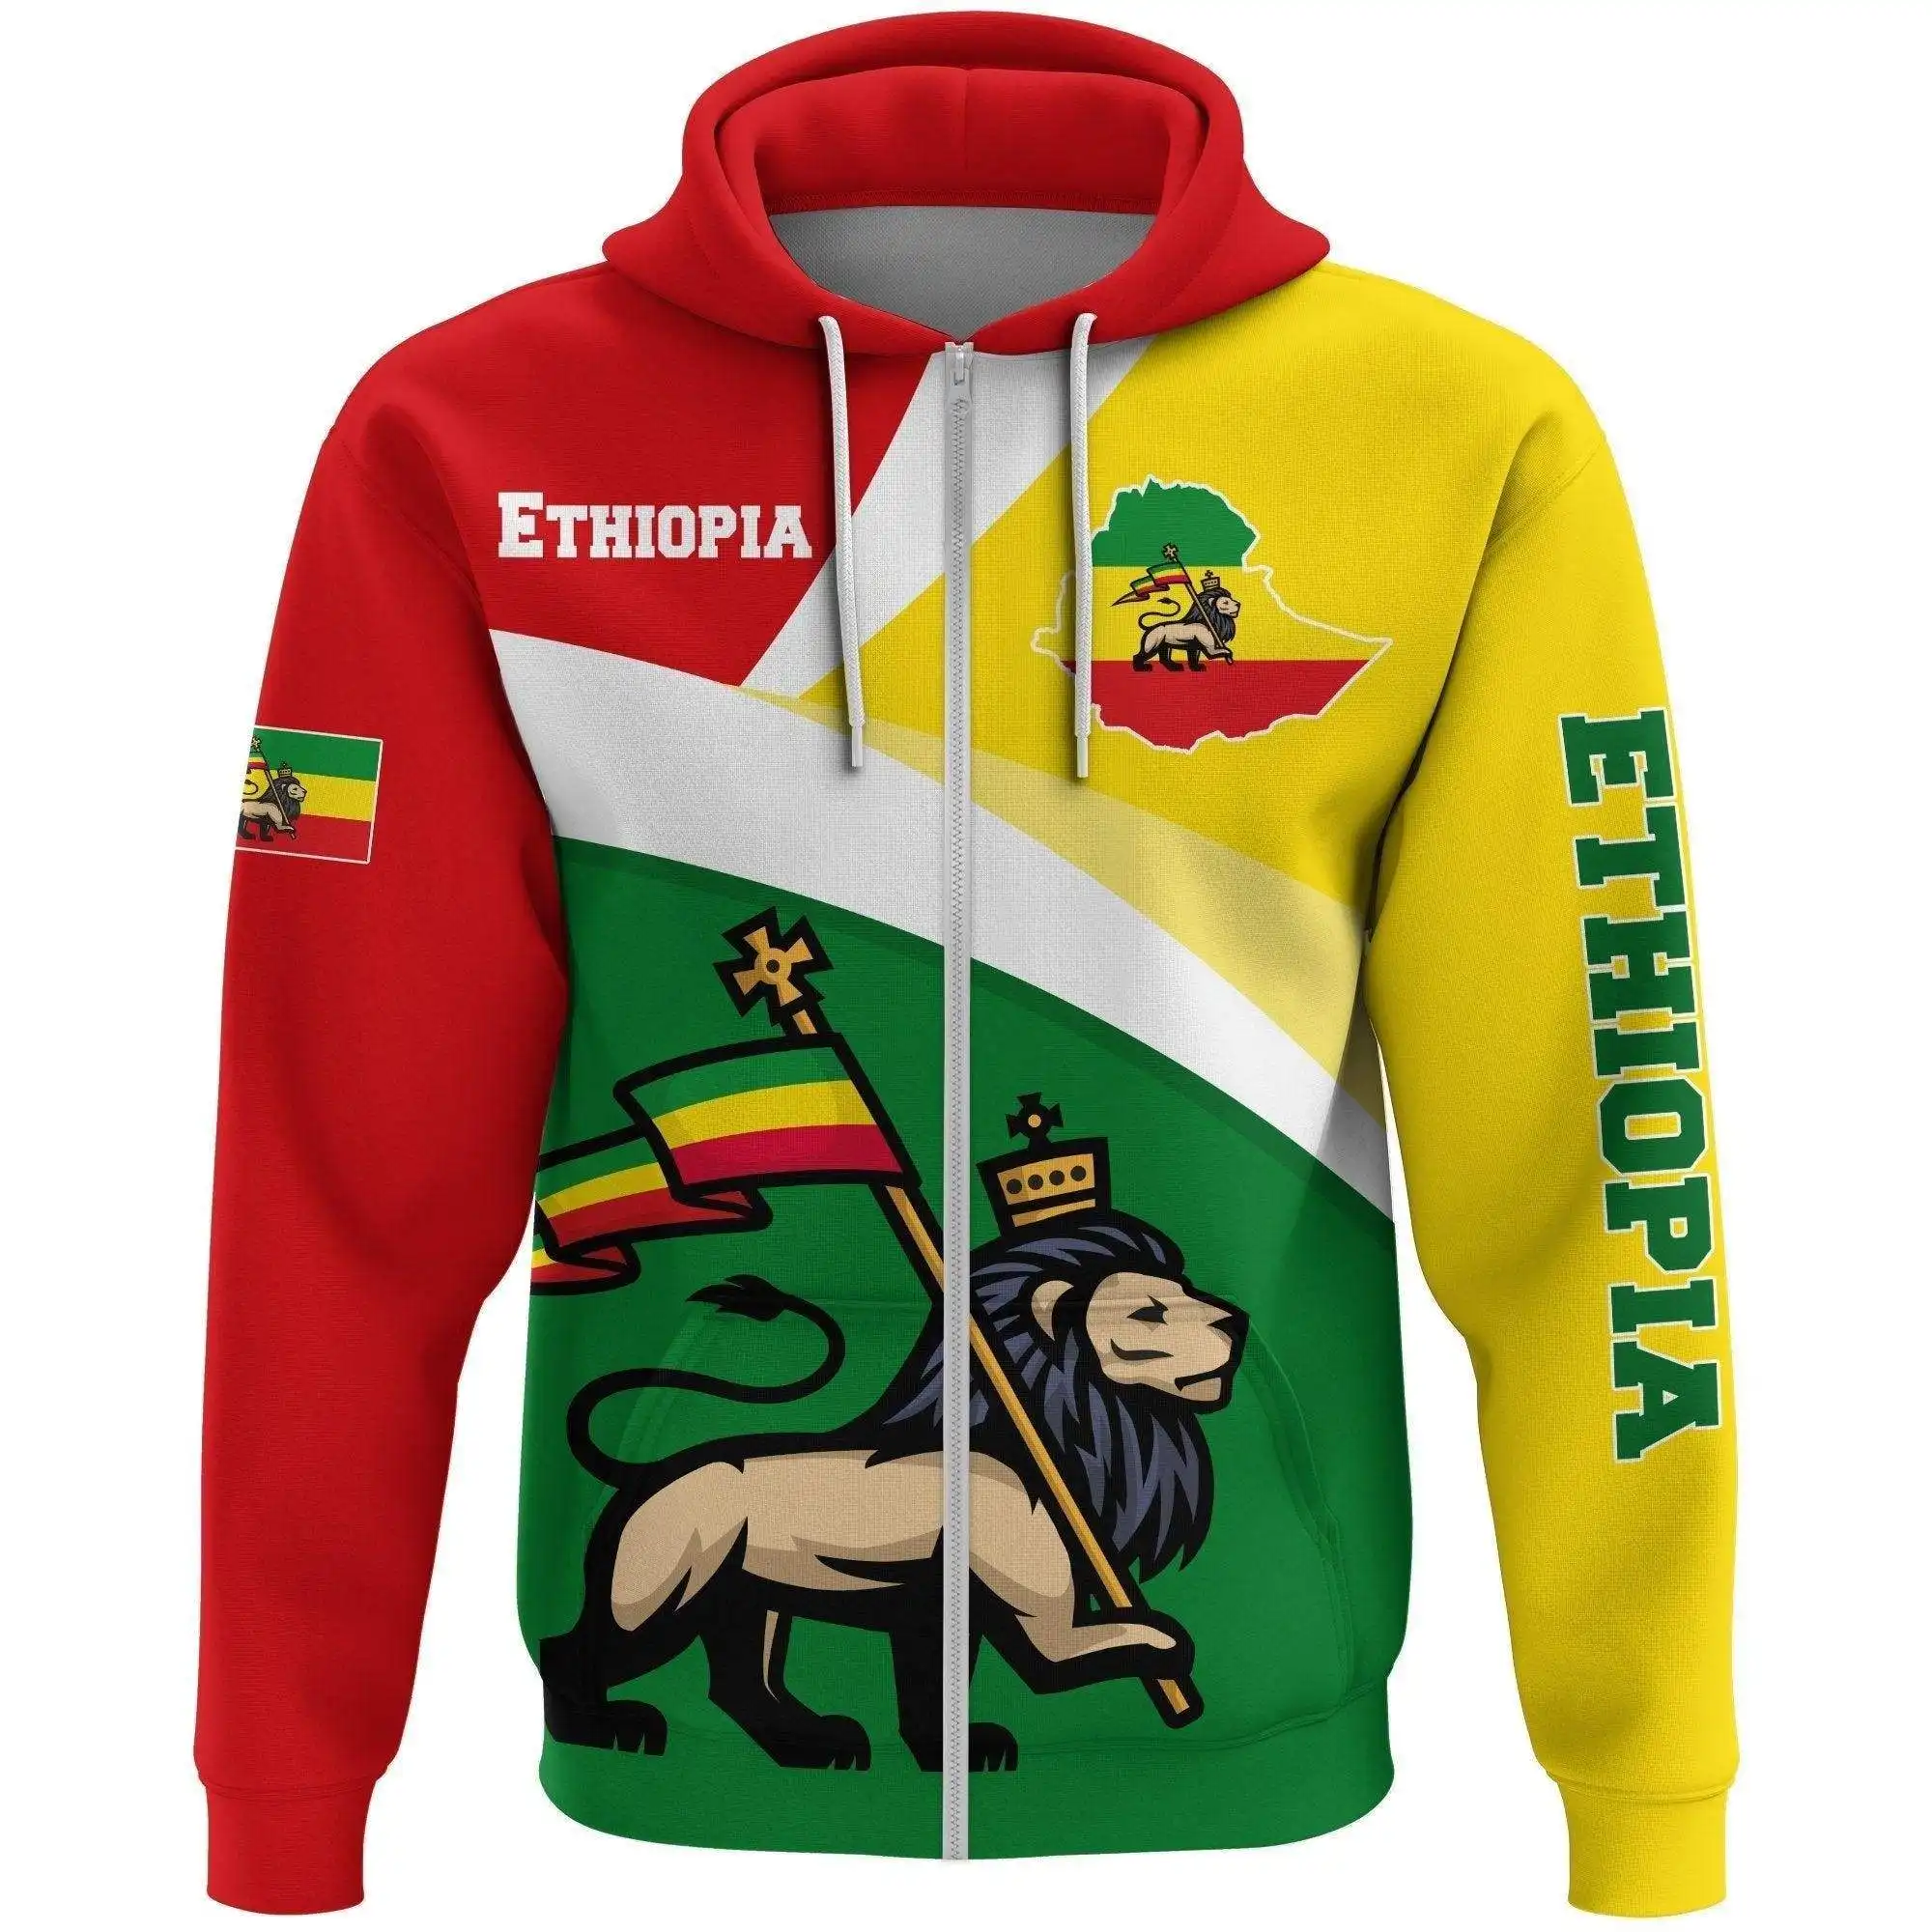 Kaus ritsleting desainer merek Etiopia murah kaus Fashion nyaman sesuai pesanan kualitas tinggi pakaian pria